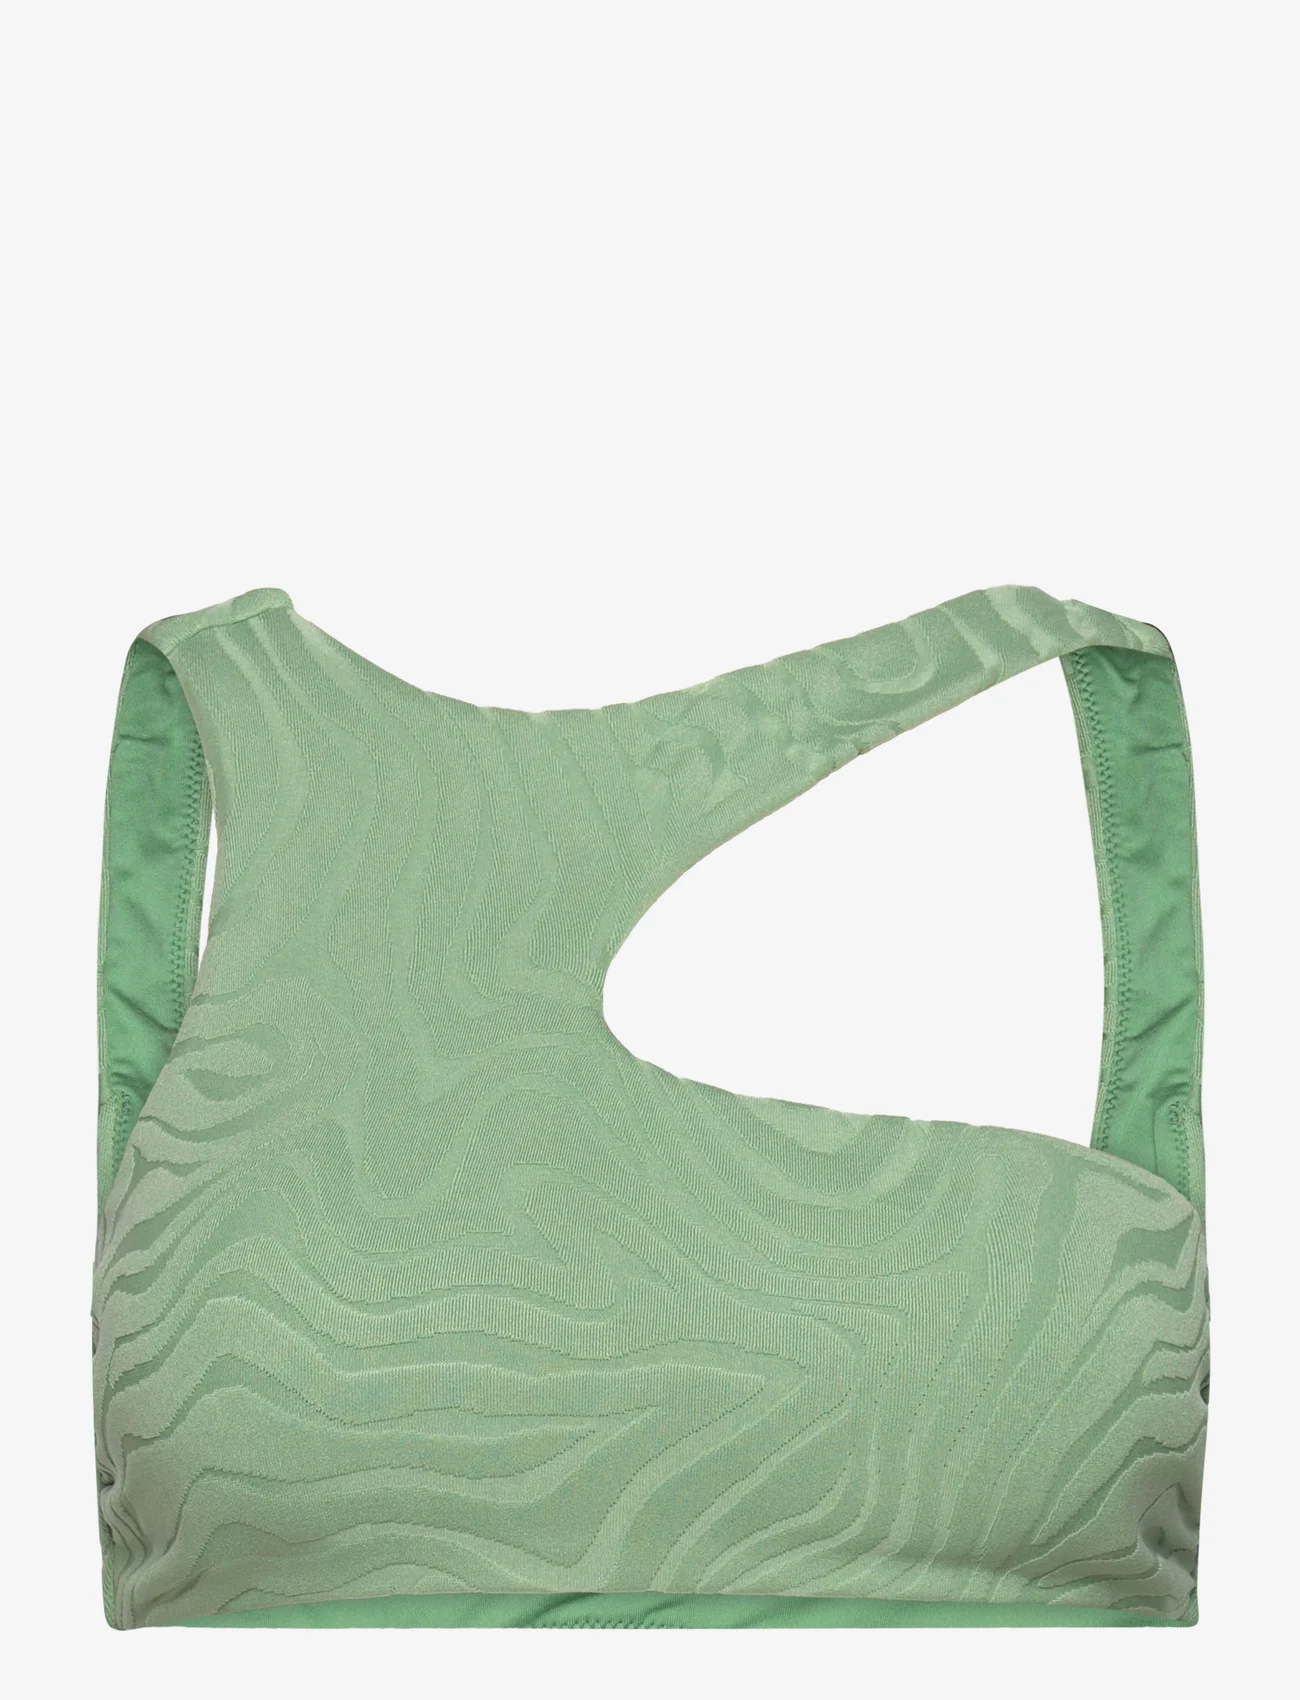 Seafolly - Second Wave Assymetrical Tank - bikinien bandeauyläosat - palm green - 0